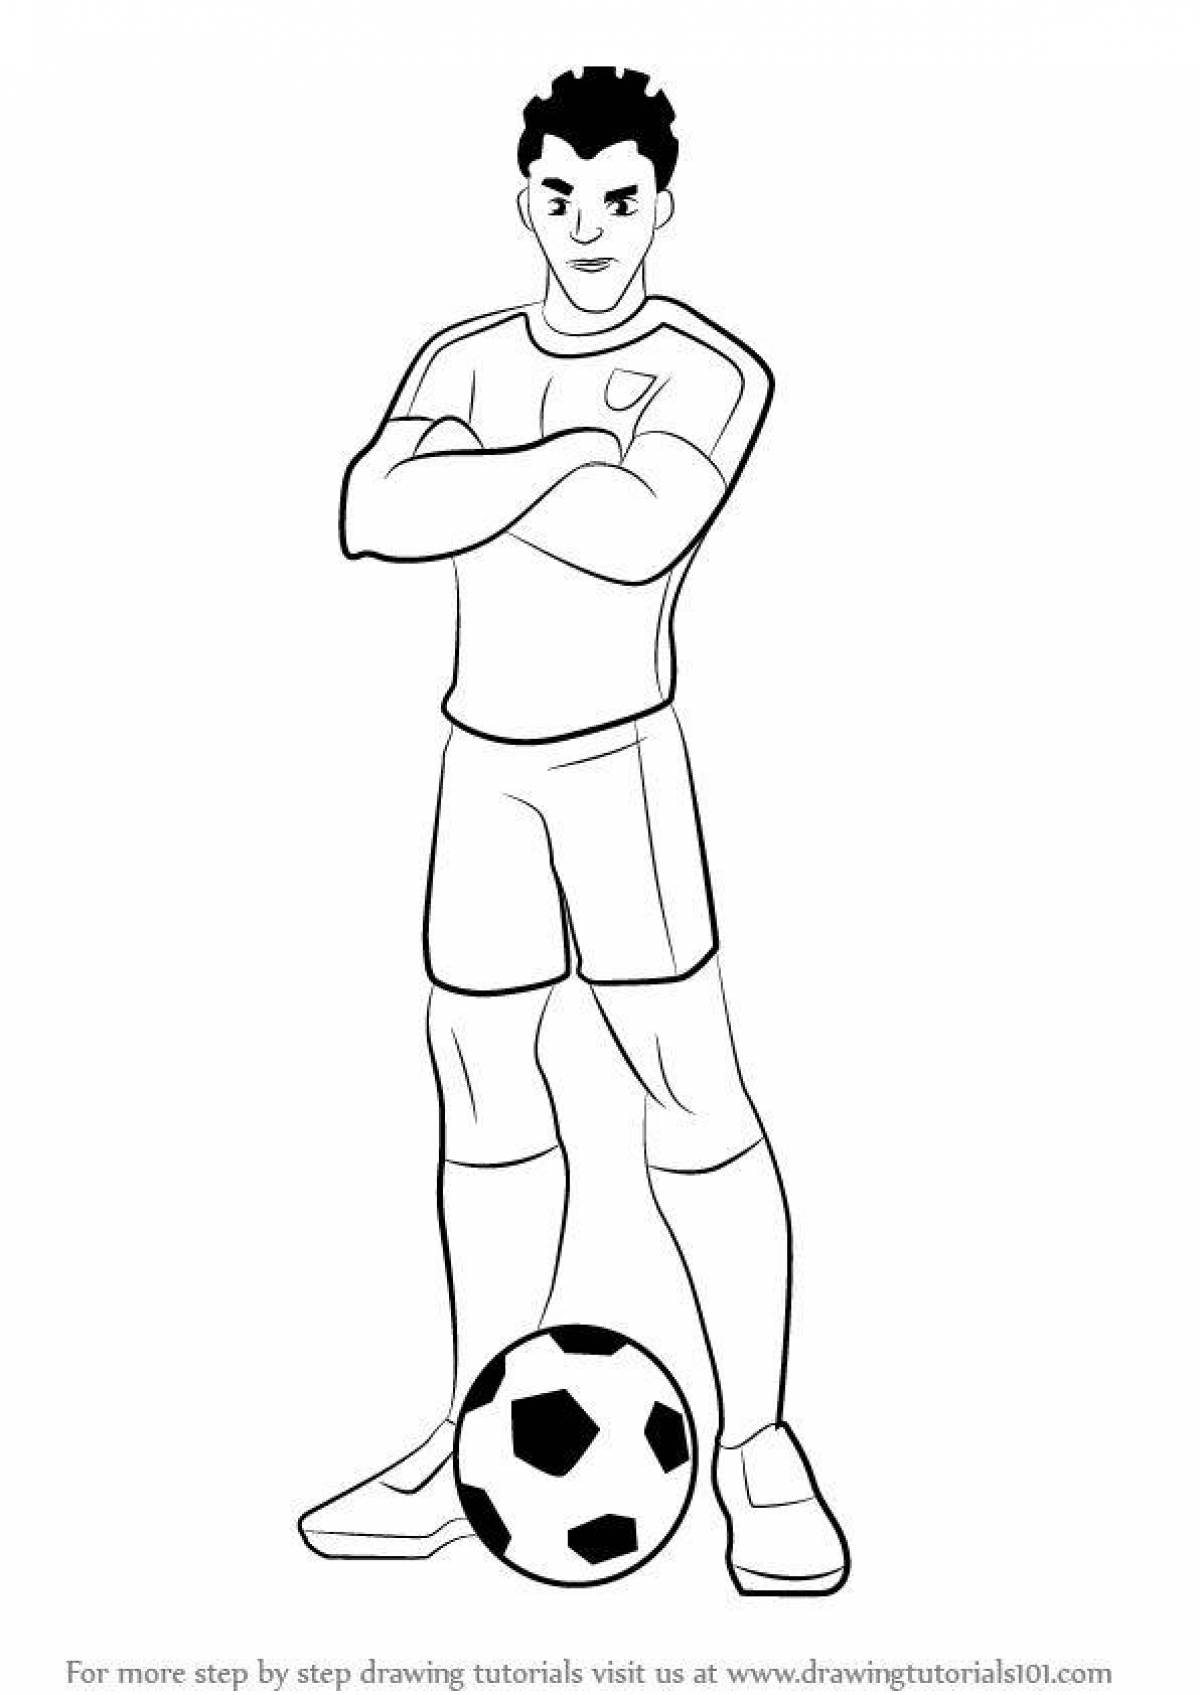 Рисунок стоящего футболиста